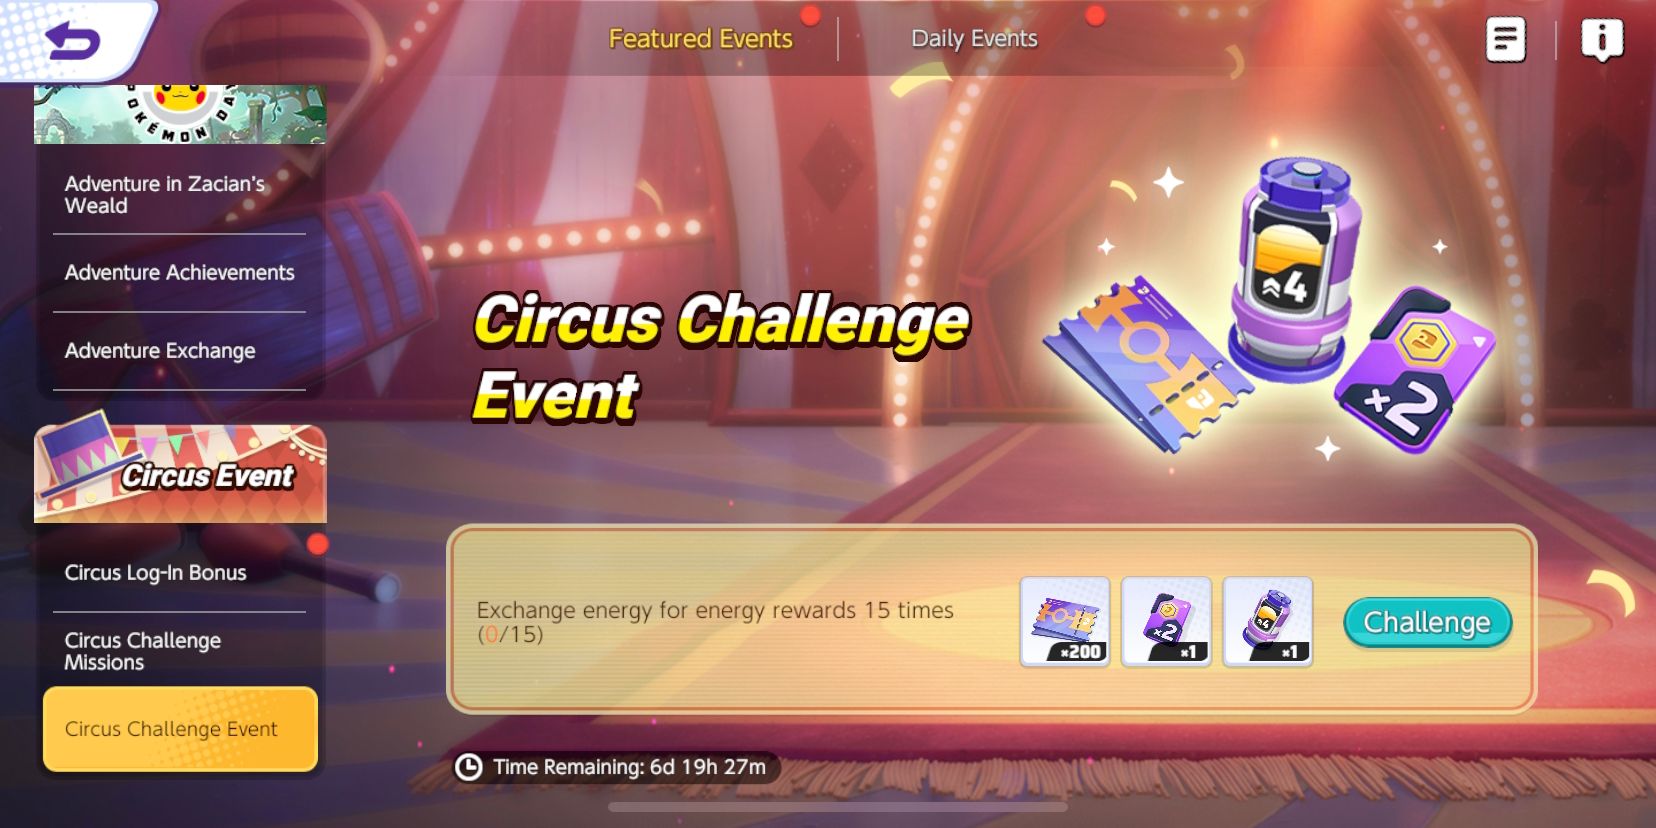 Circus Challenge Event-skærm fra Pokemon Unite, der viser begivenhedens mission og belønninger